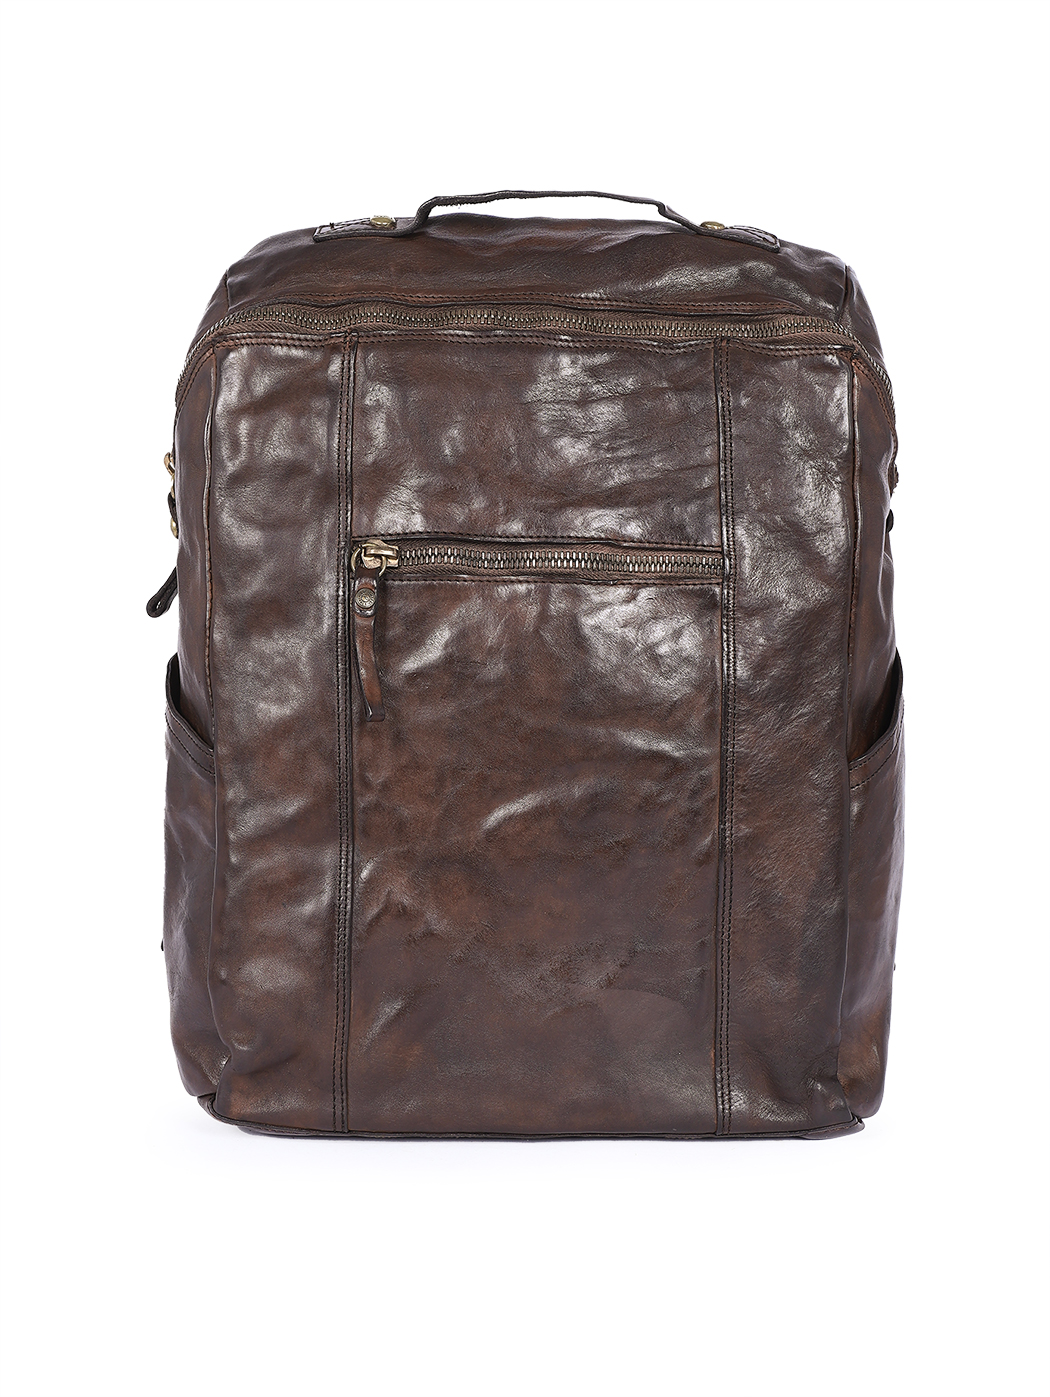 Прямоугольный рюкзак  на молнии темно - коричневого цвета